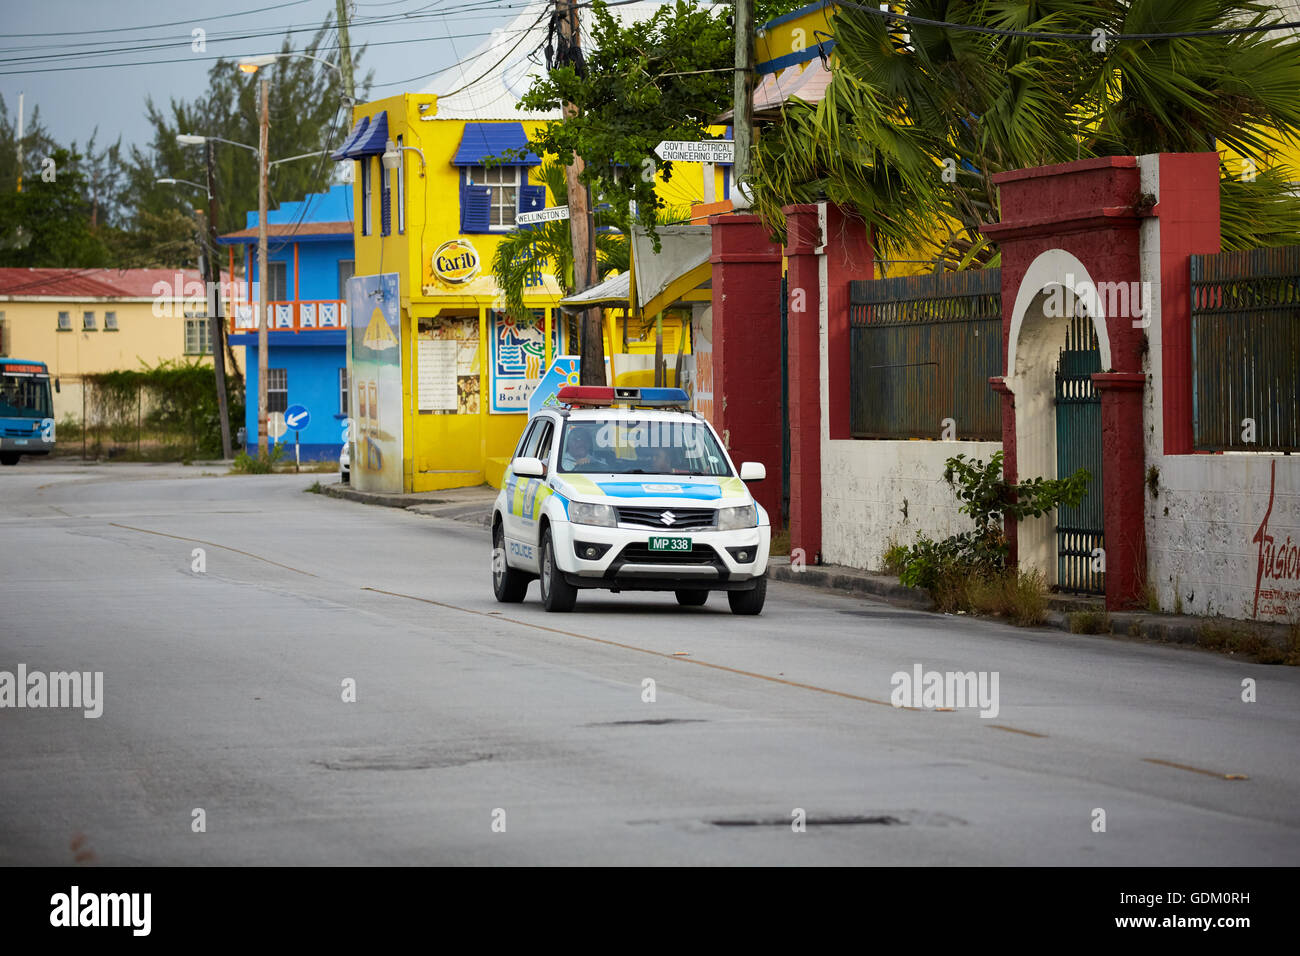 Die kleinen Antillen Barbados Pfarrkirche Sankt Michael West Indies Bridgetown Suzuki Polizei Auto 4 x 4 Livree schlagen Verbrechen Verbrecher zu erkennen Stockfoto